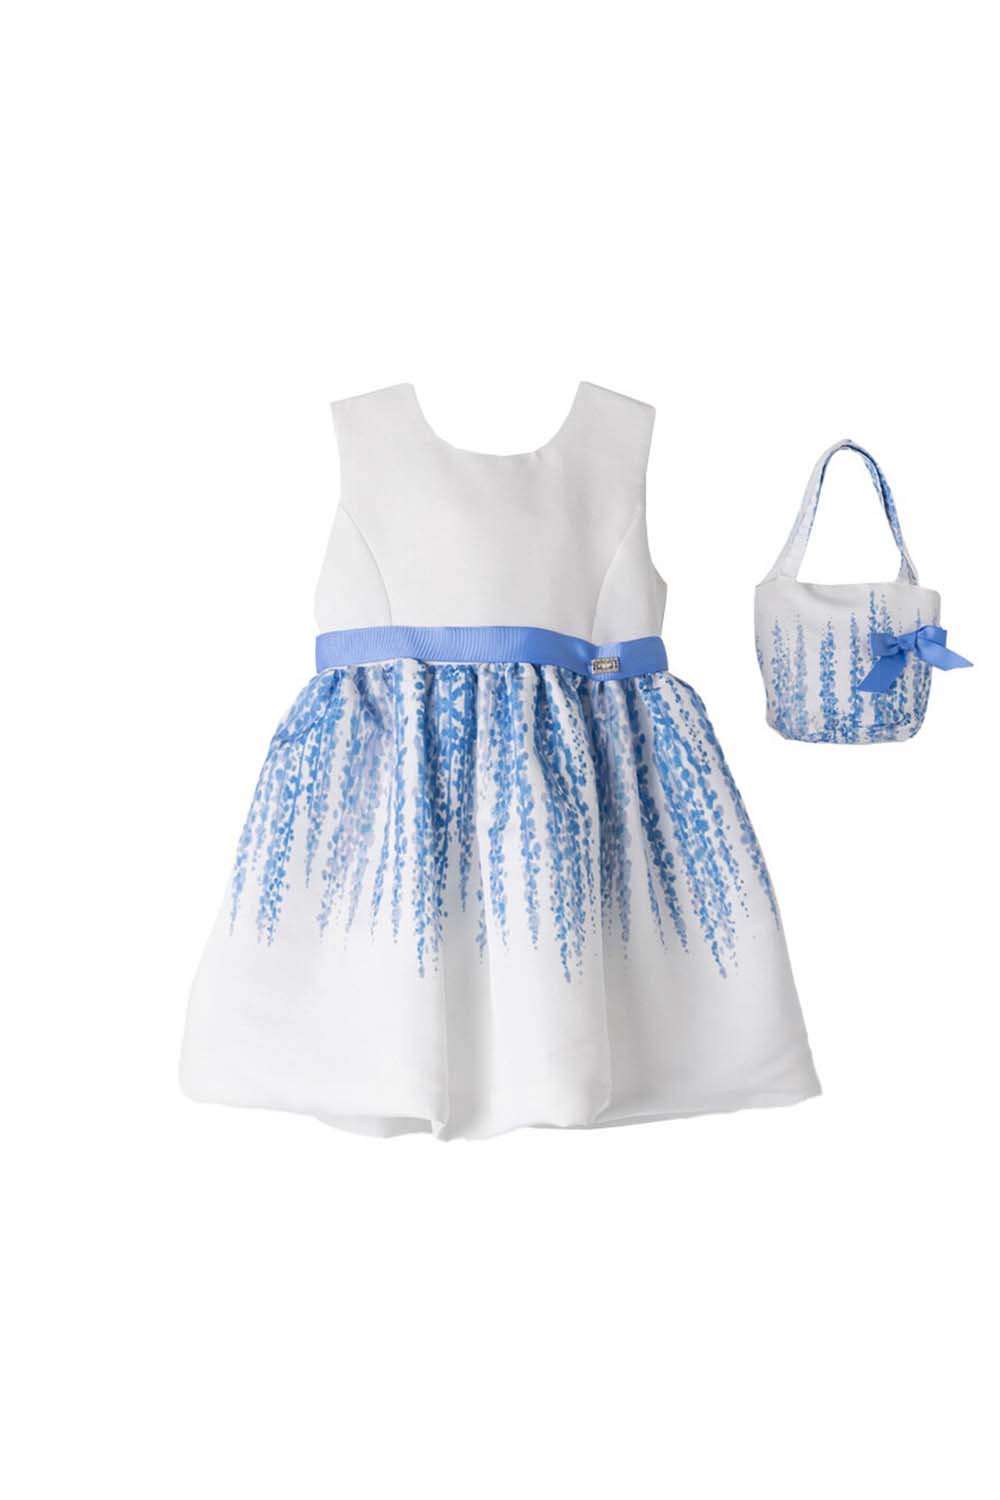 Παιδικό Φόρεμα Για Κορίτσι EBITA 242234 Μπλε